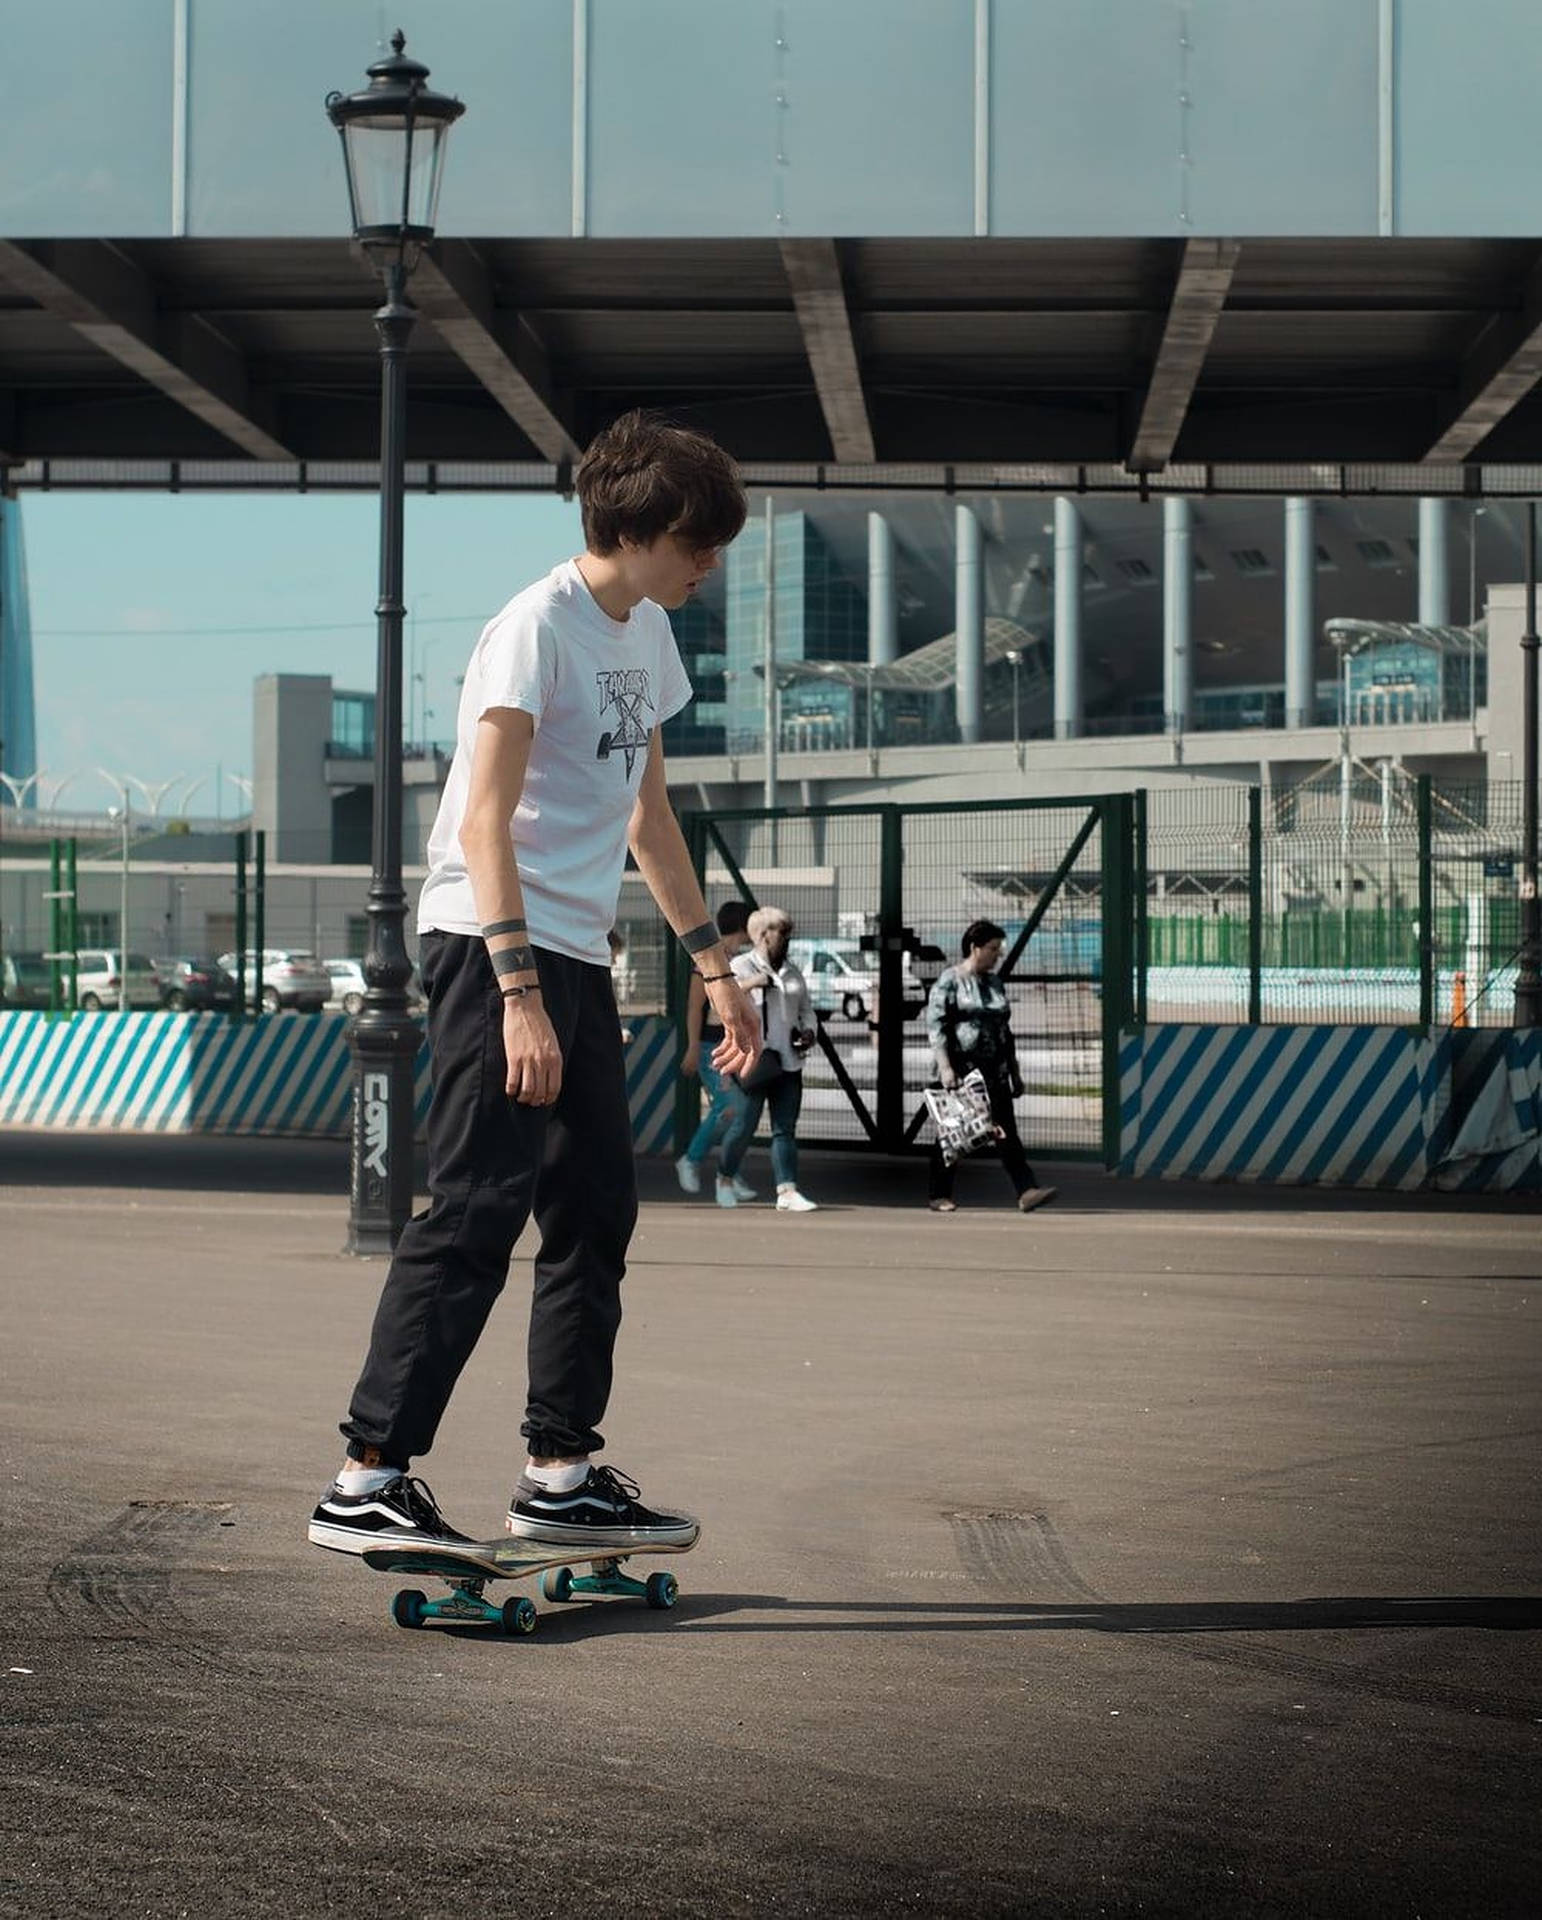 Aesthetic Skater Boy Portrait